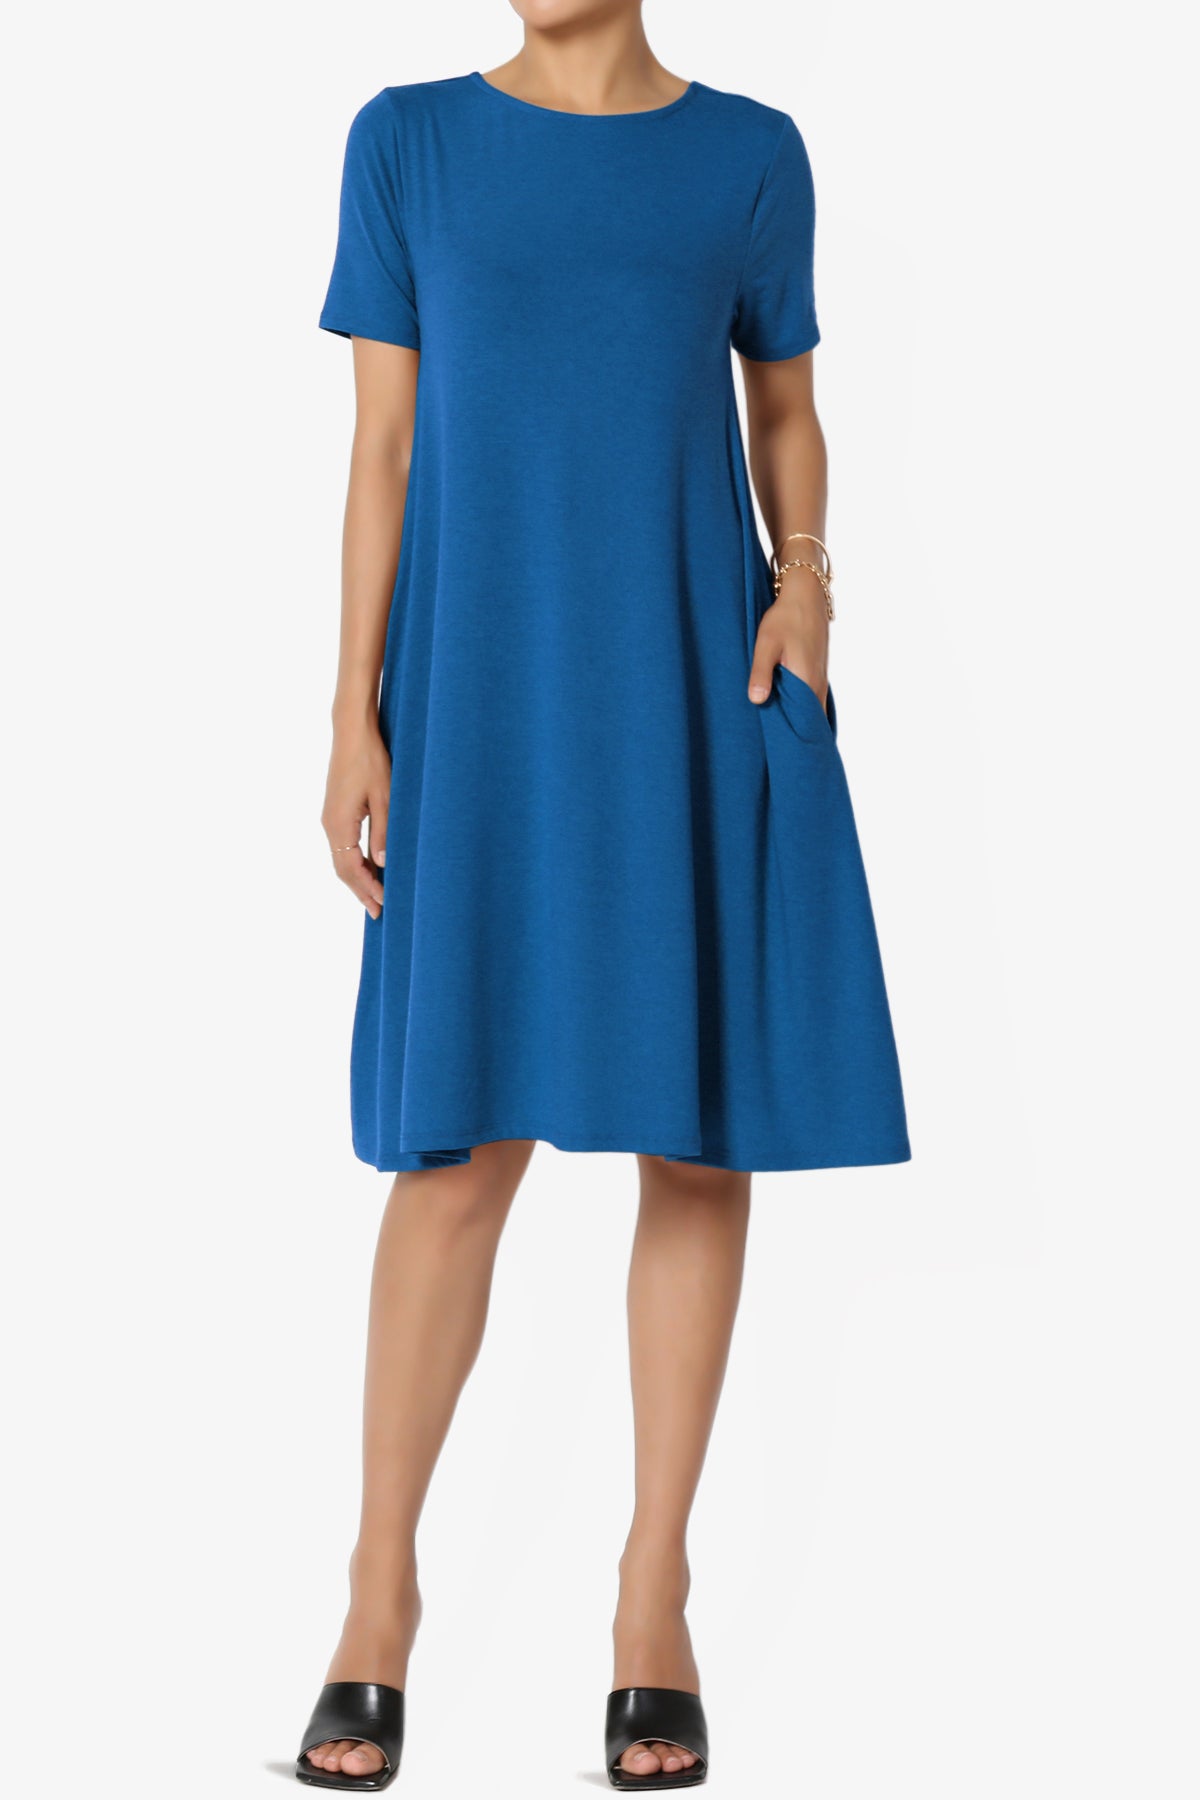 Allie Short Sleeve Jersey A-Line Dress CLASSIC BLUE_1